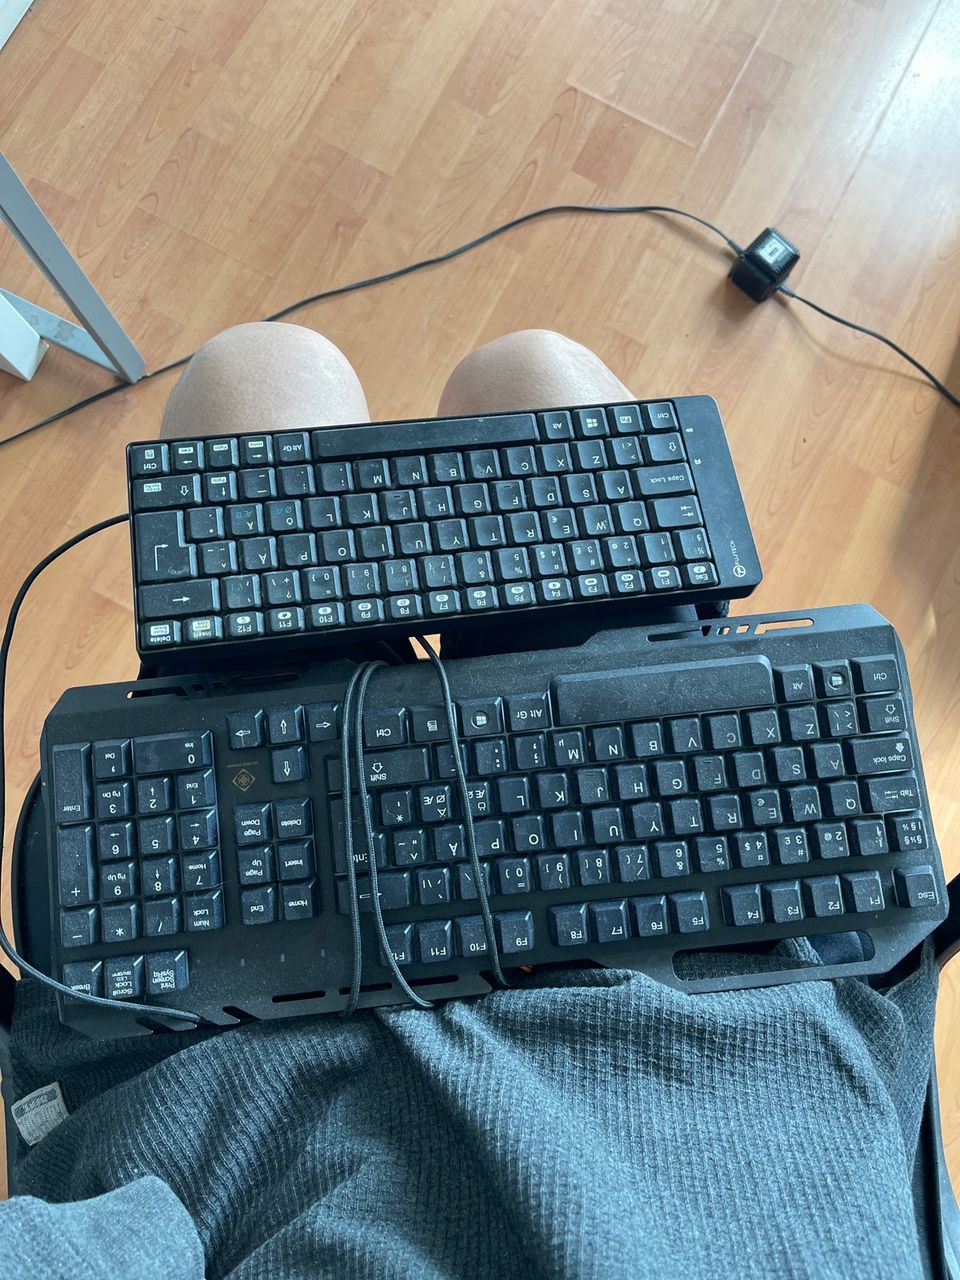 2 keyboard in one